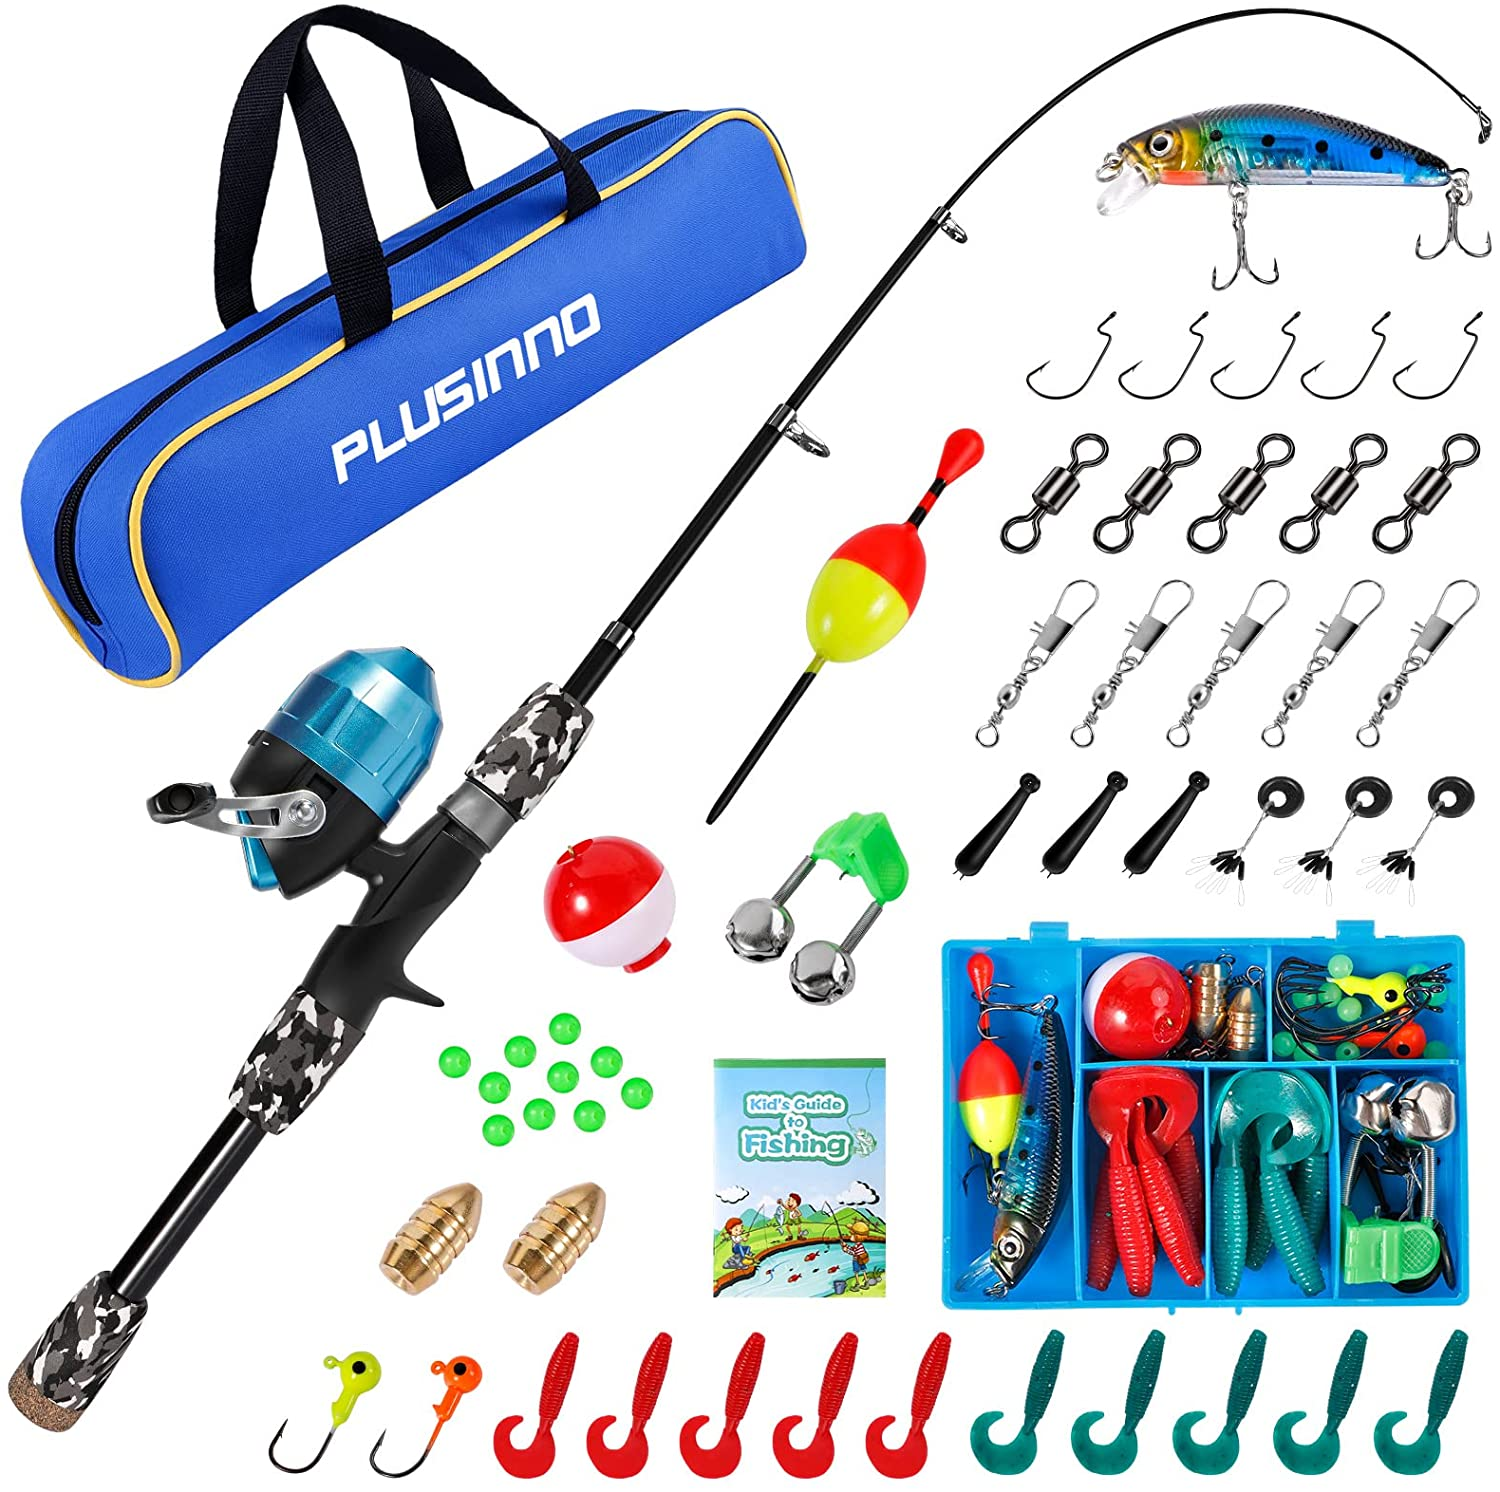 Telescopic Fishing Pole Set Portable Lightweight Fishing Reel Comfortable  Grip Fishing Rod And Line Kit For Beginners Children